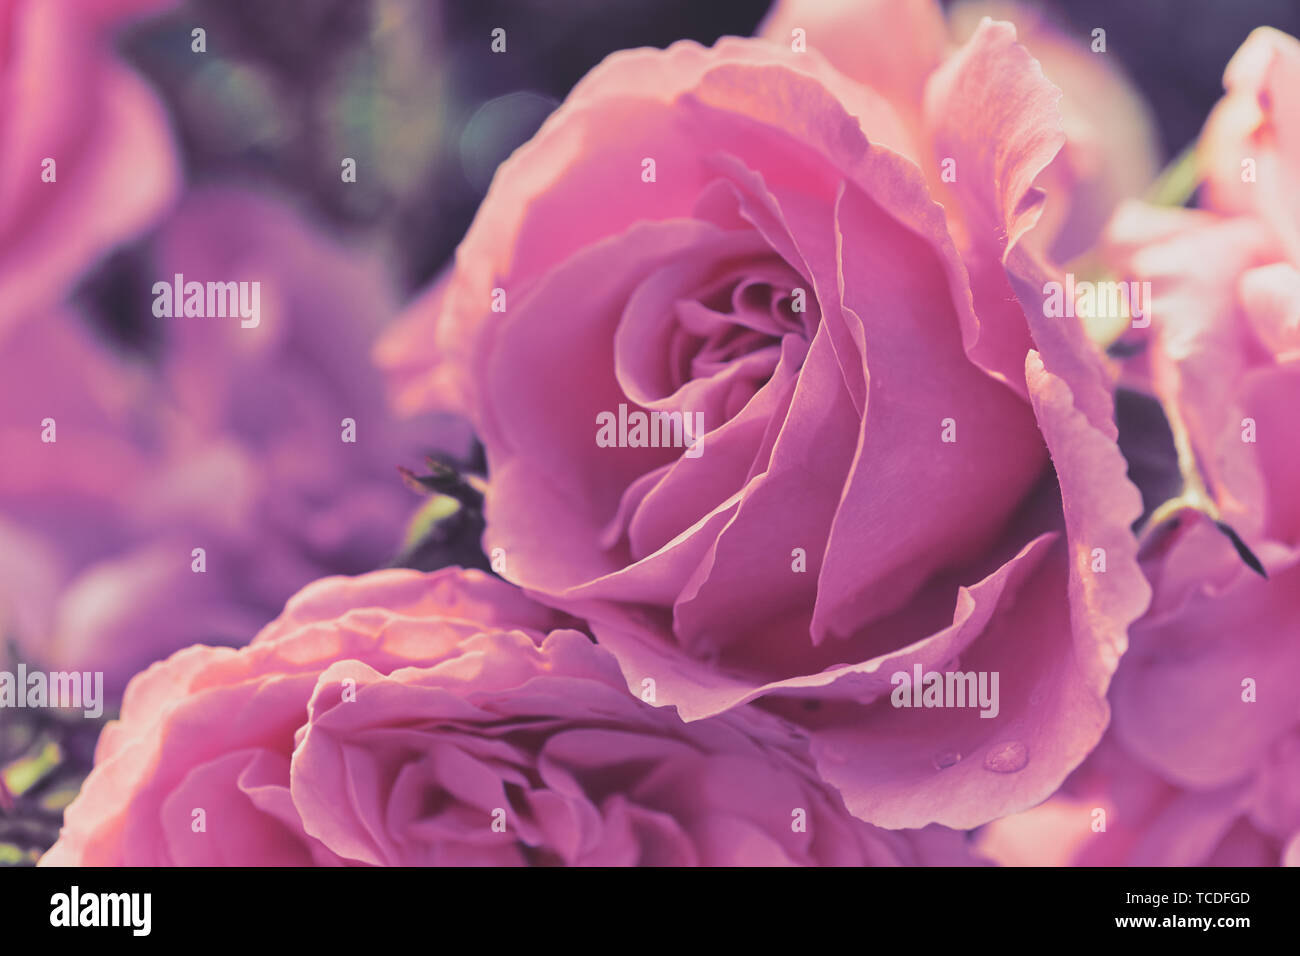 Macro foto a colori di rose rosa in un delicato stile come immagine di sfondo o biglietti di auguri Foto Stock